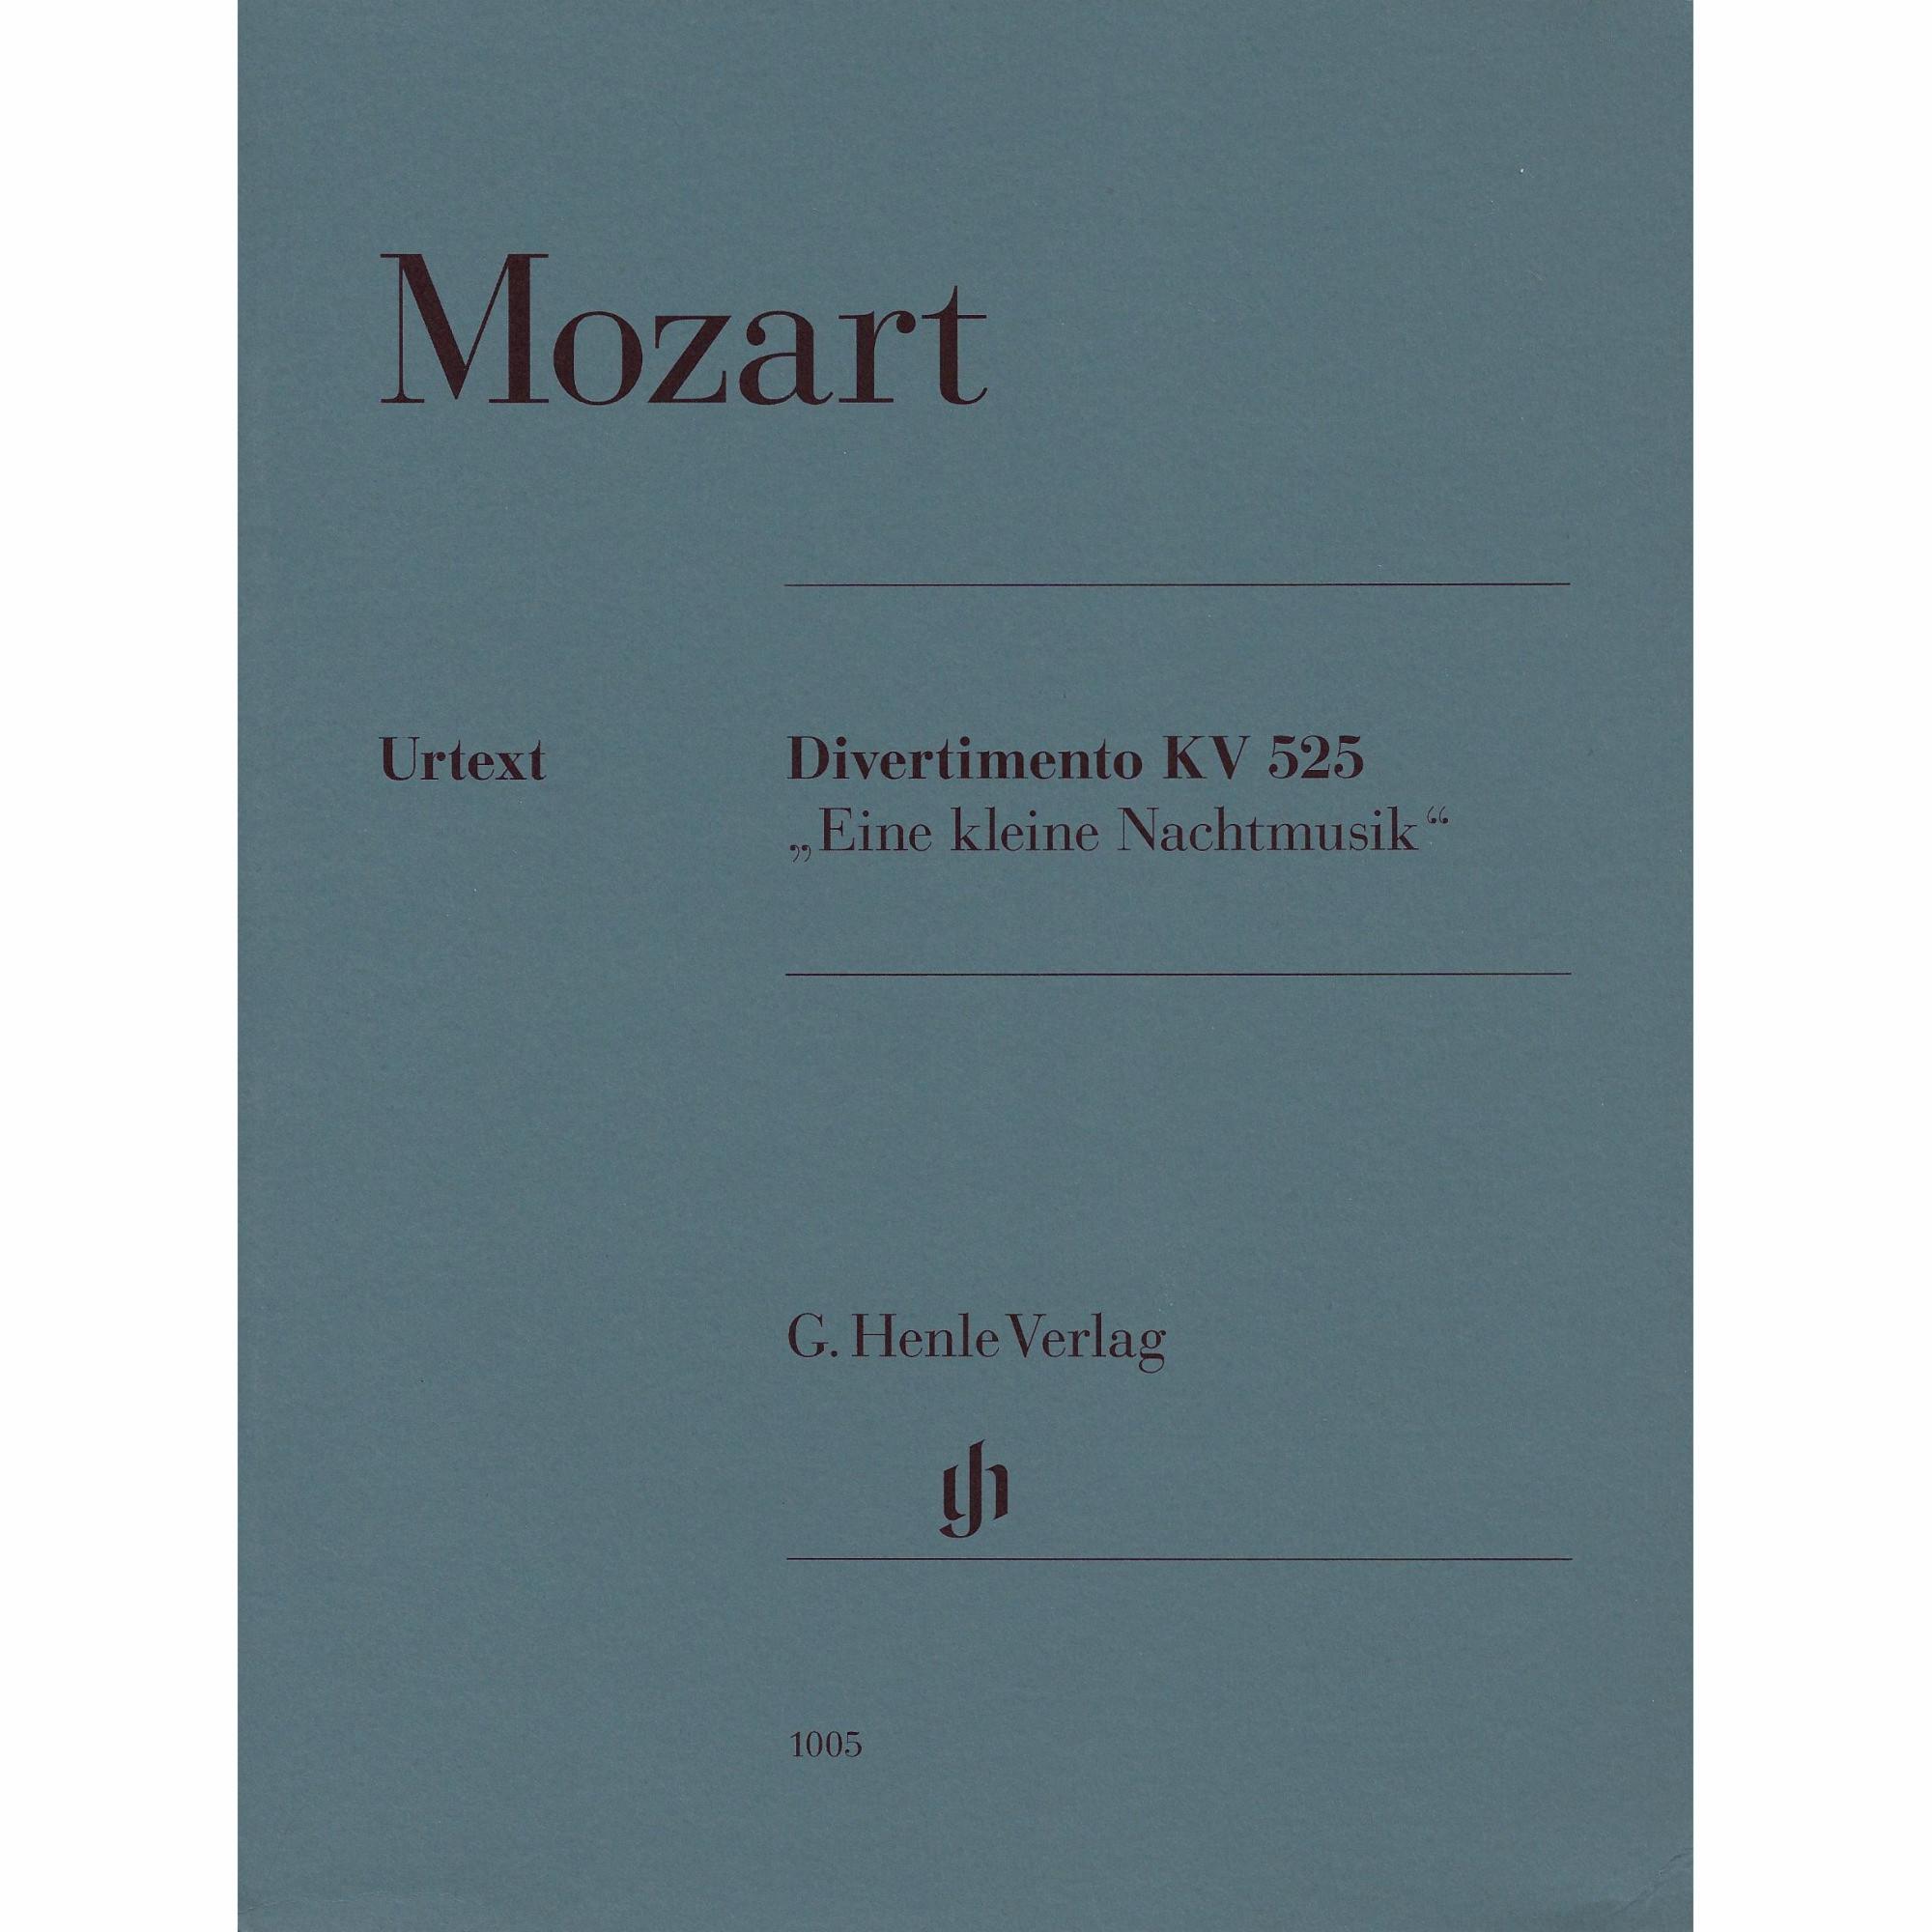 Mozart - Eine kleine Nachtmusik, K. 525 for String Quartet